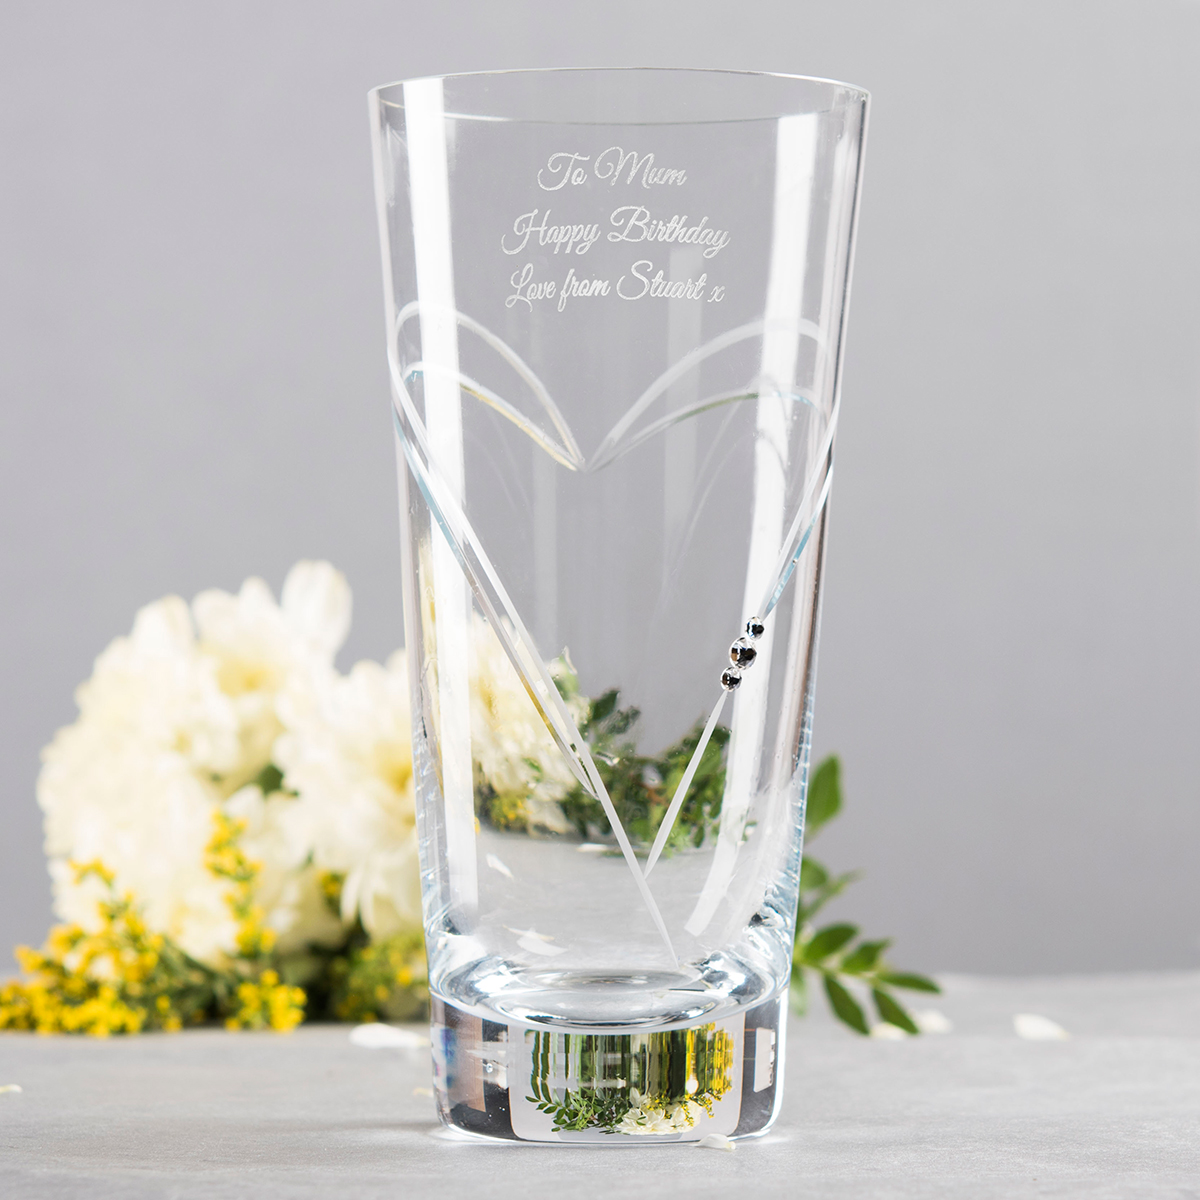 Engraved Swarovski Elements Glass Vase - Birthday